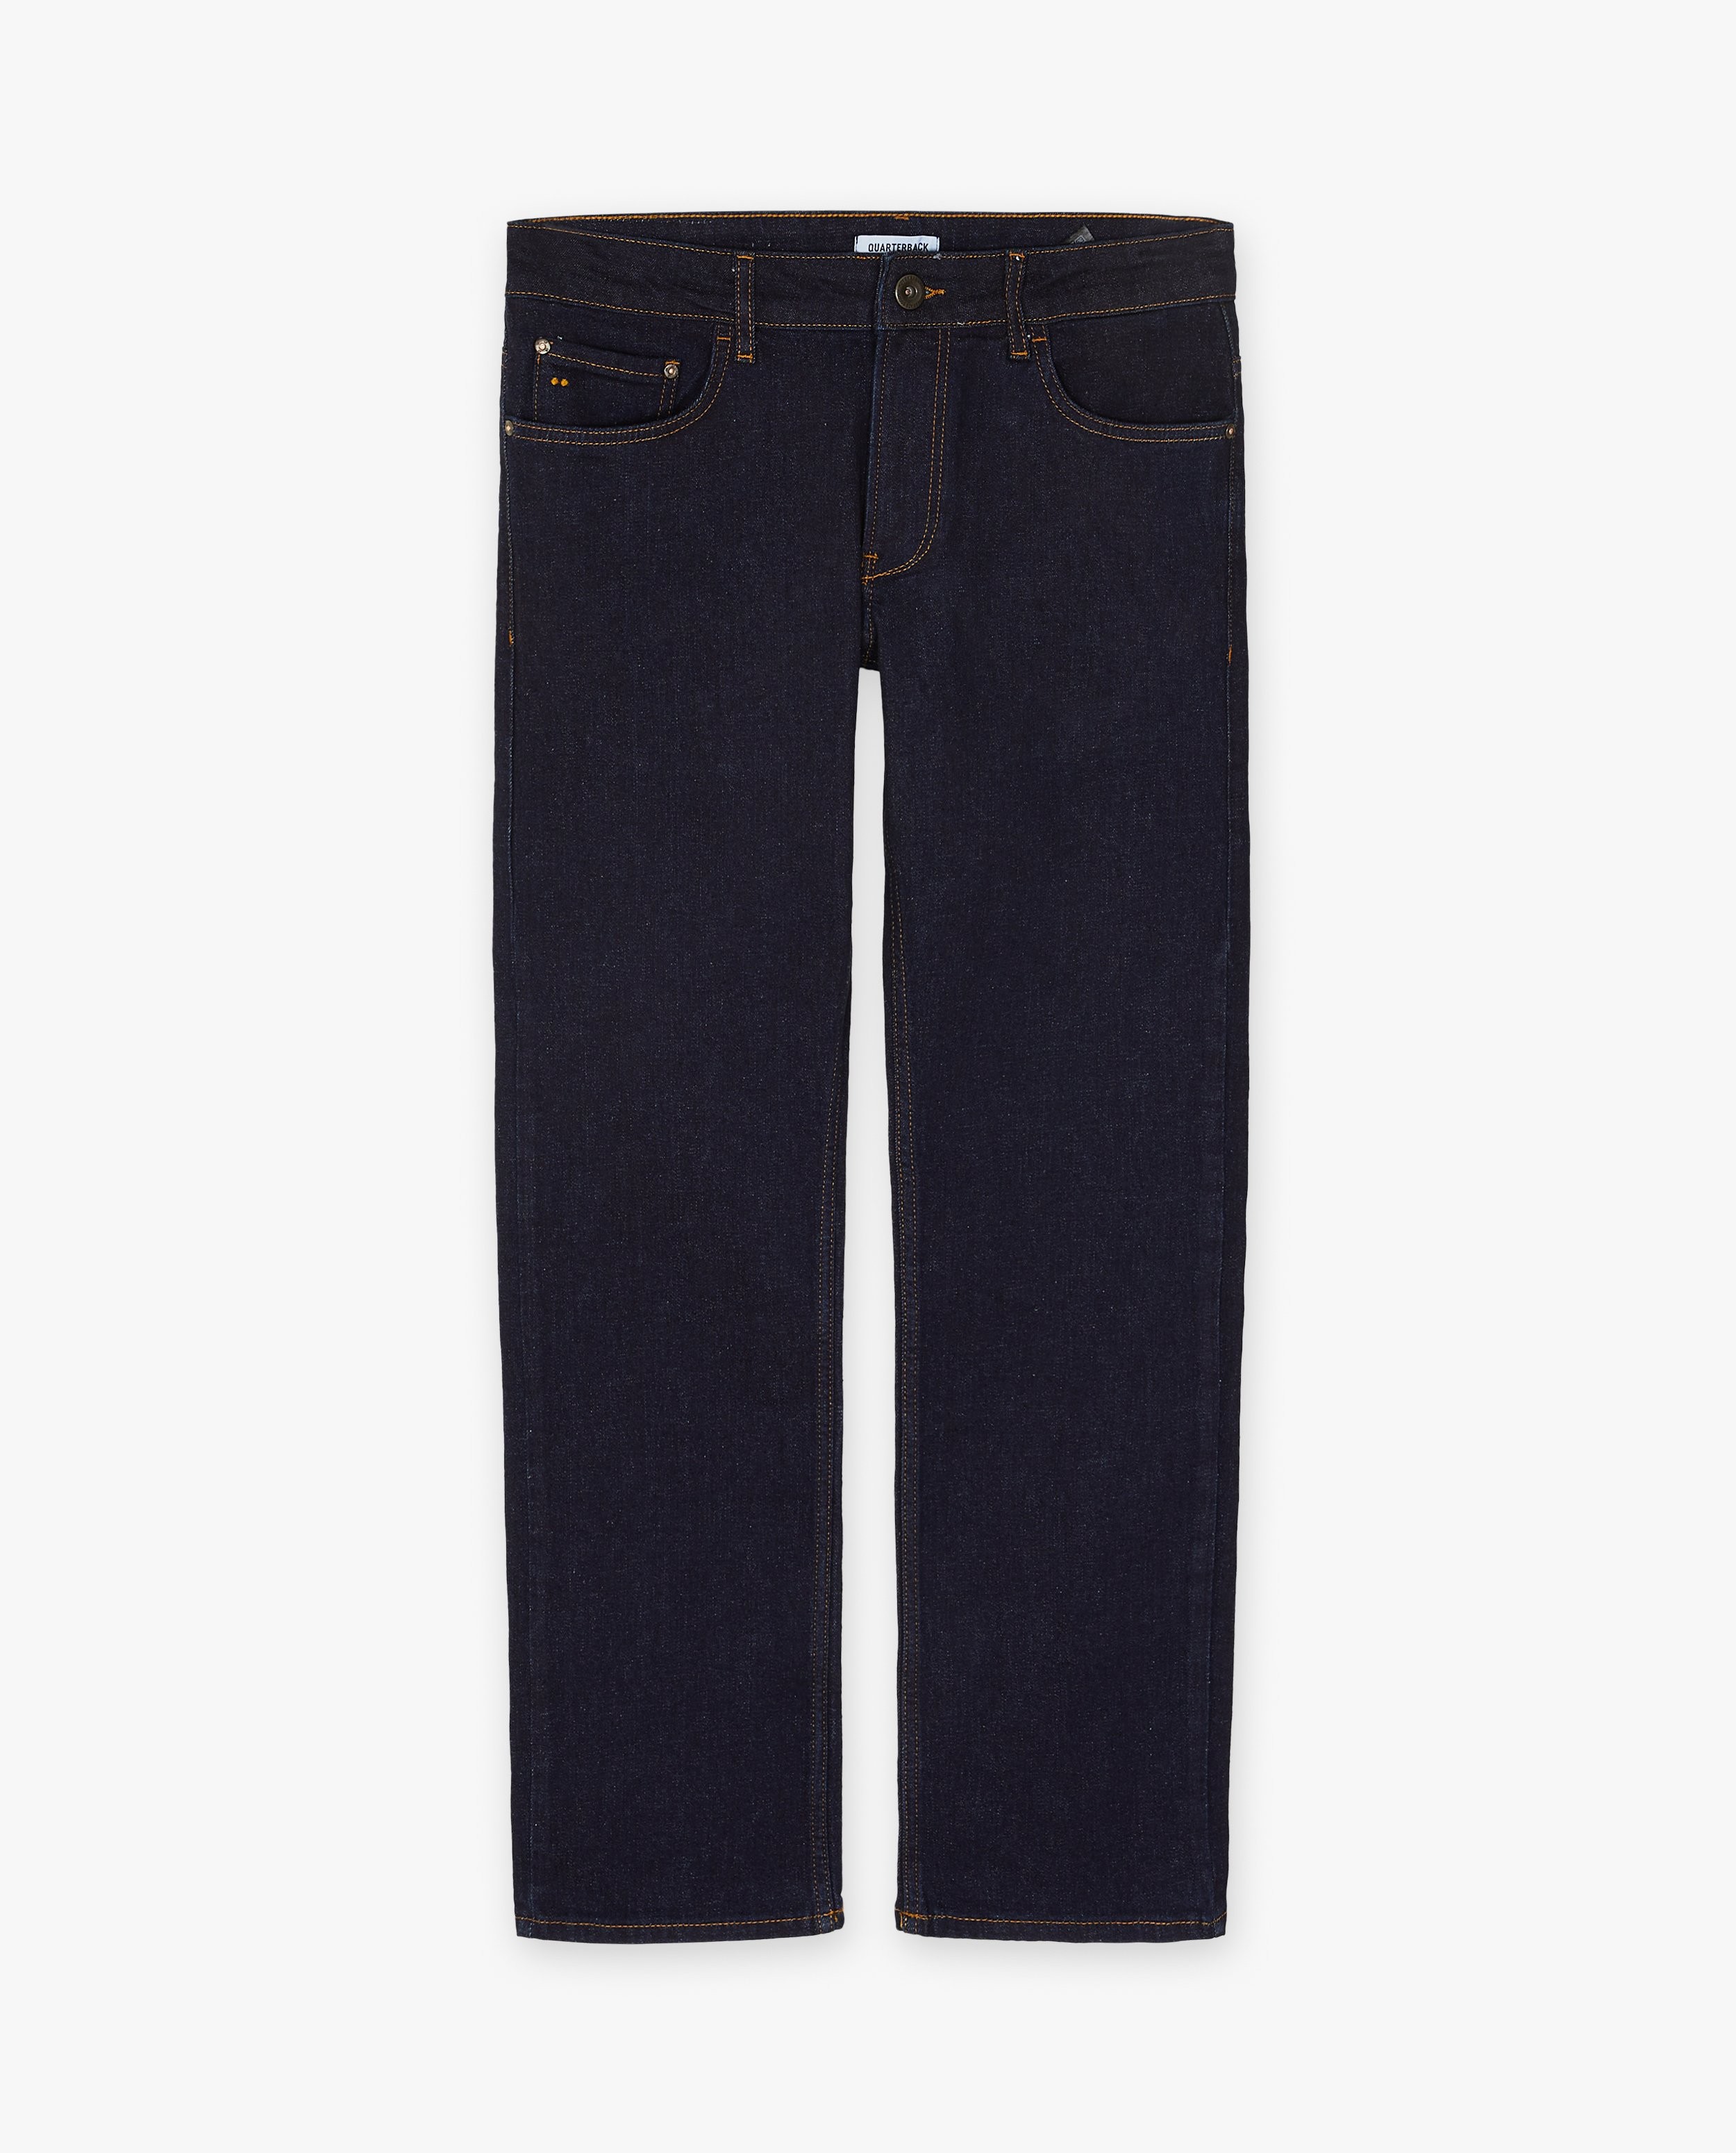 Jeans - Jeans bleu foncé, straight fit